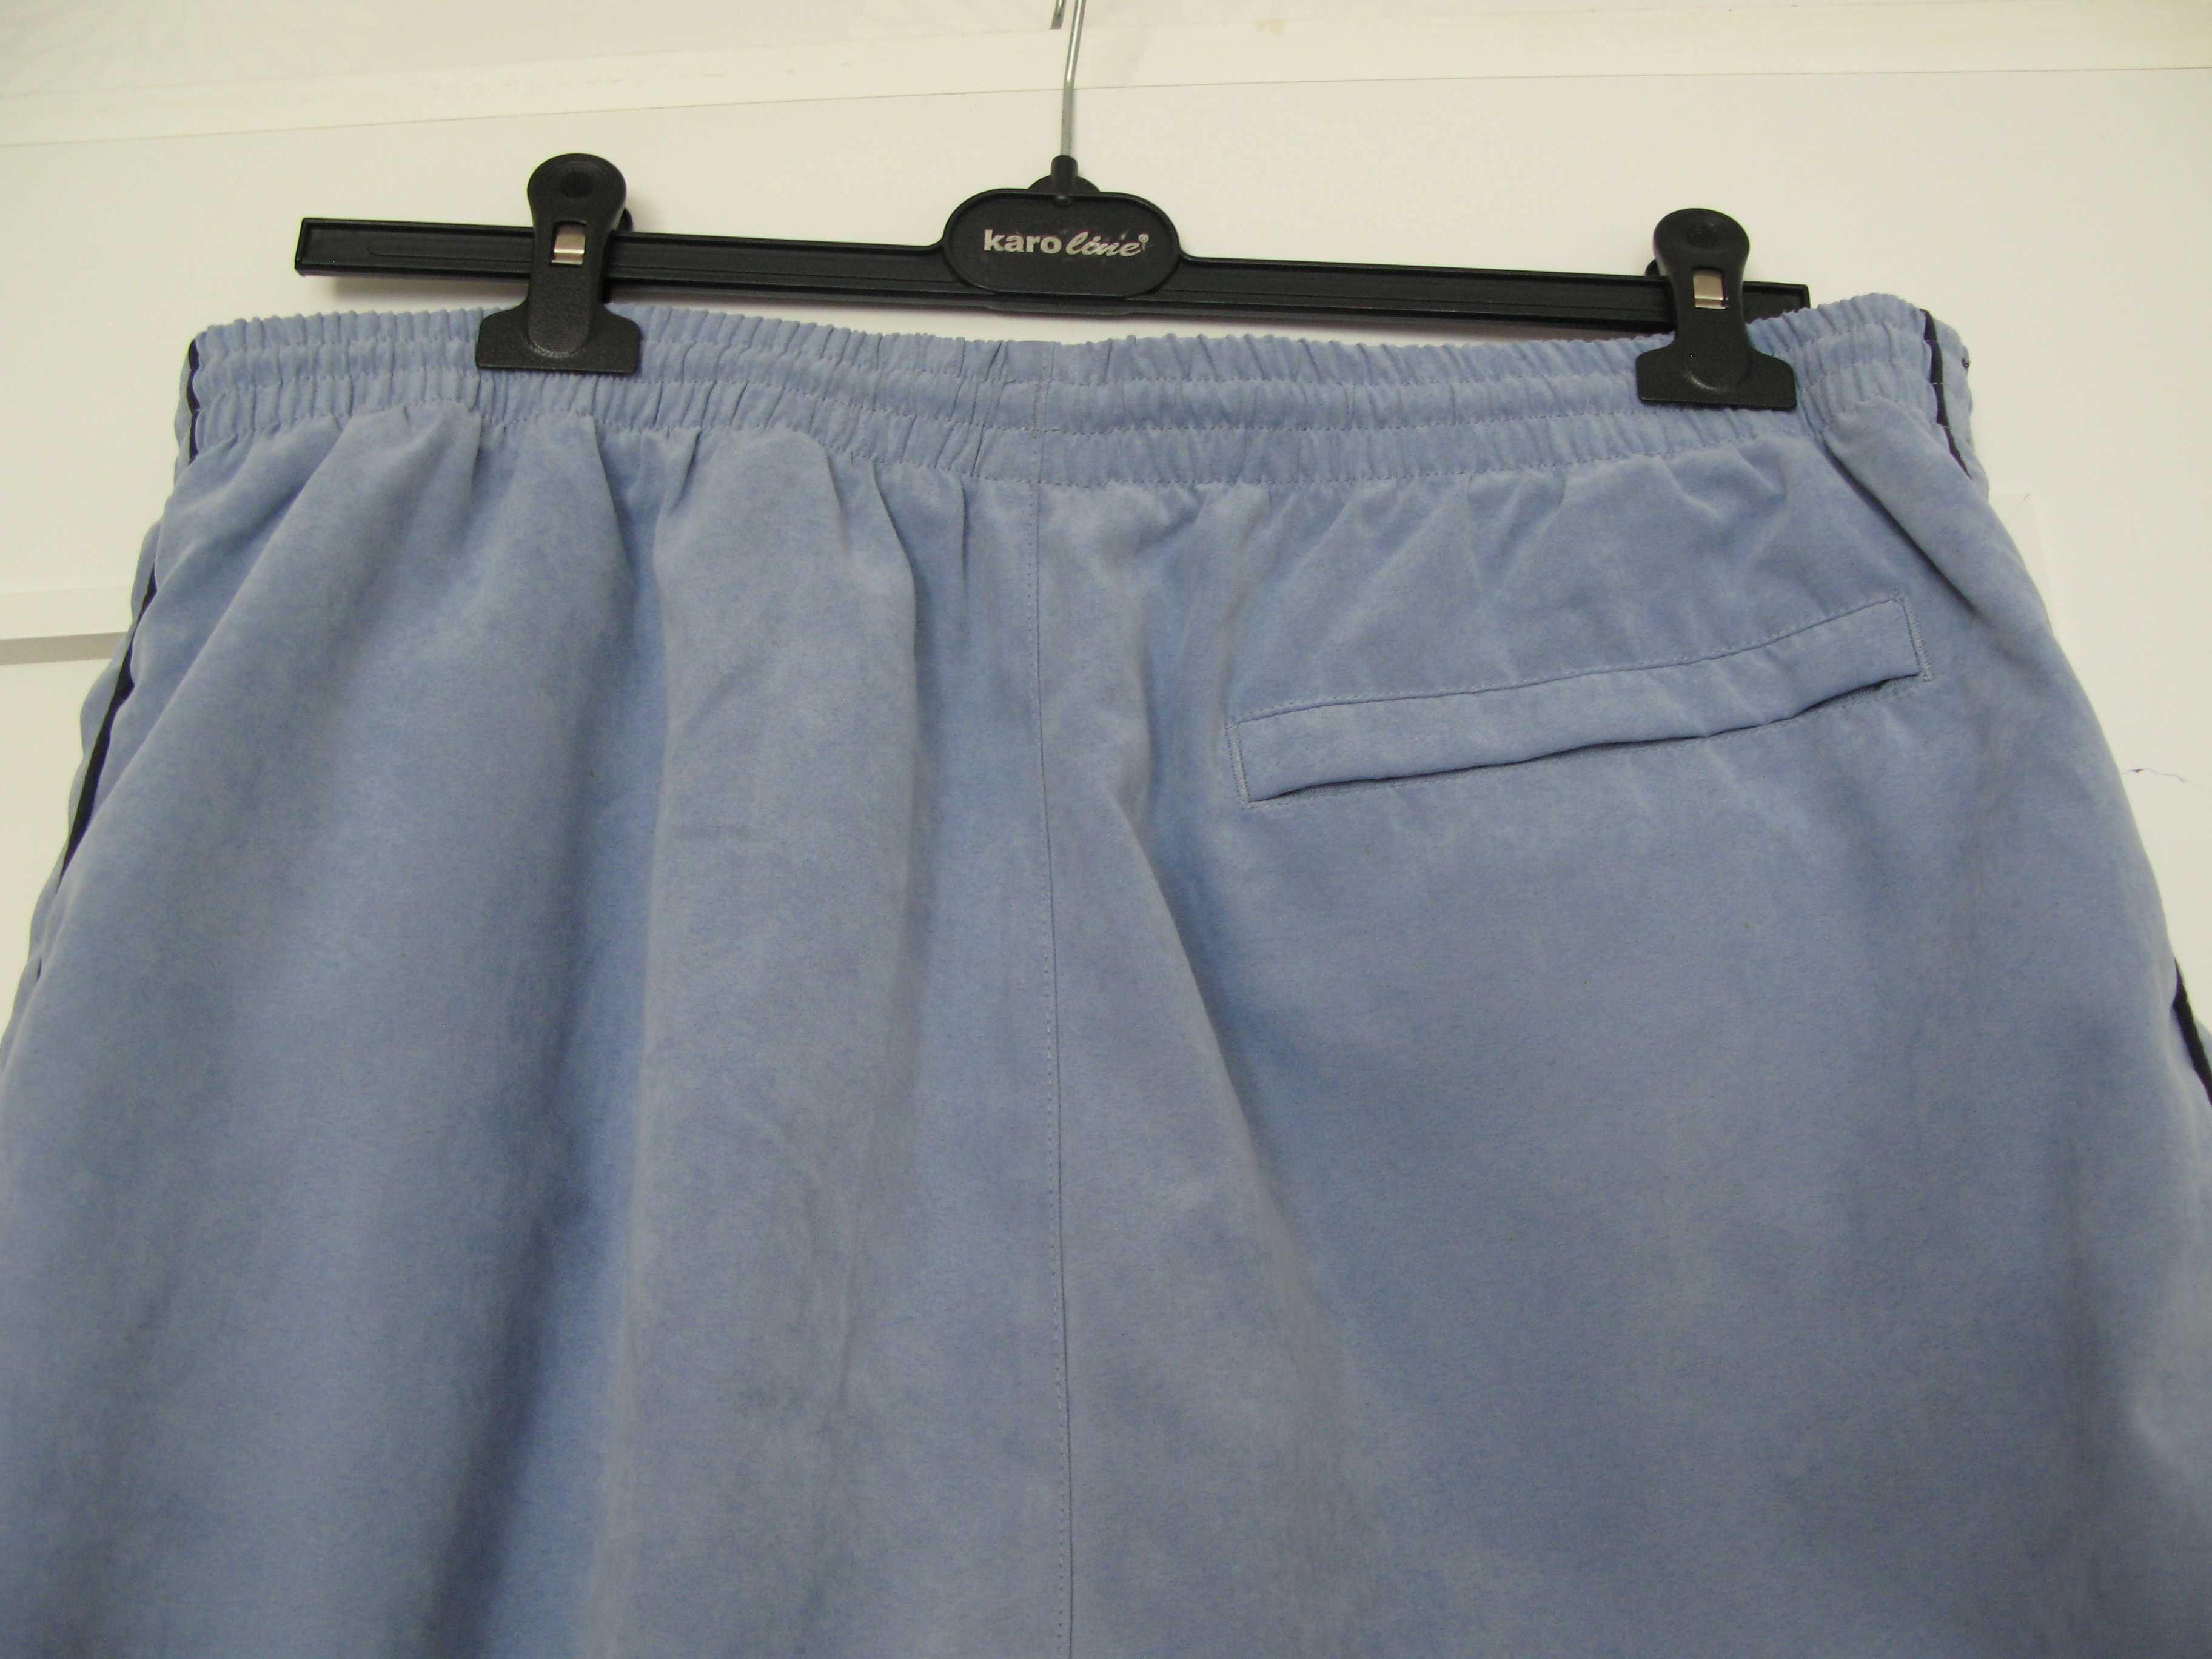 Spodnie dresowe męskie XL